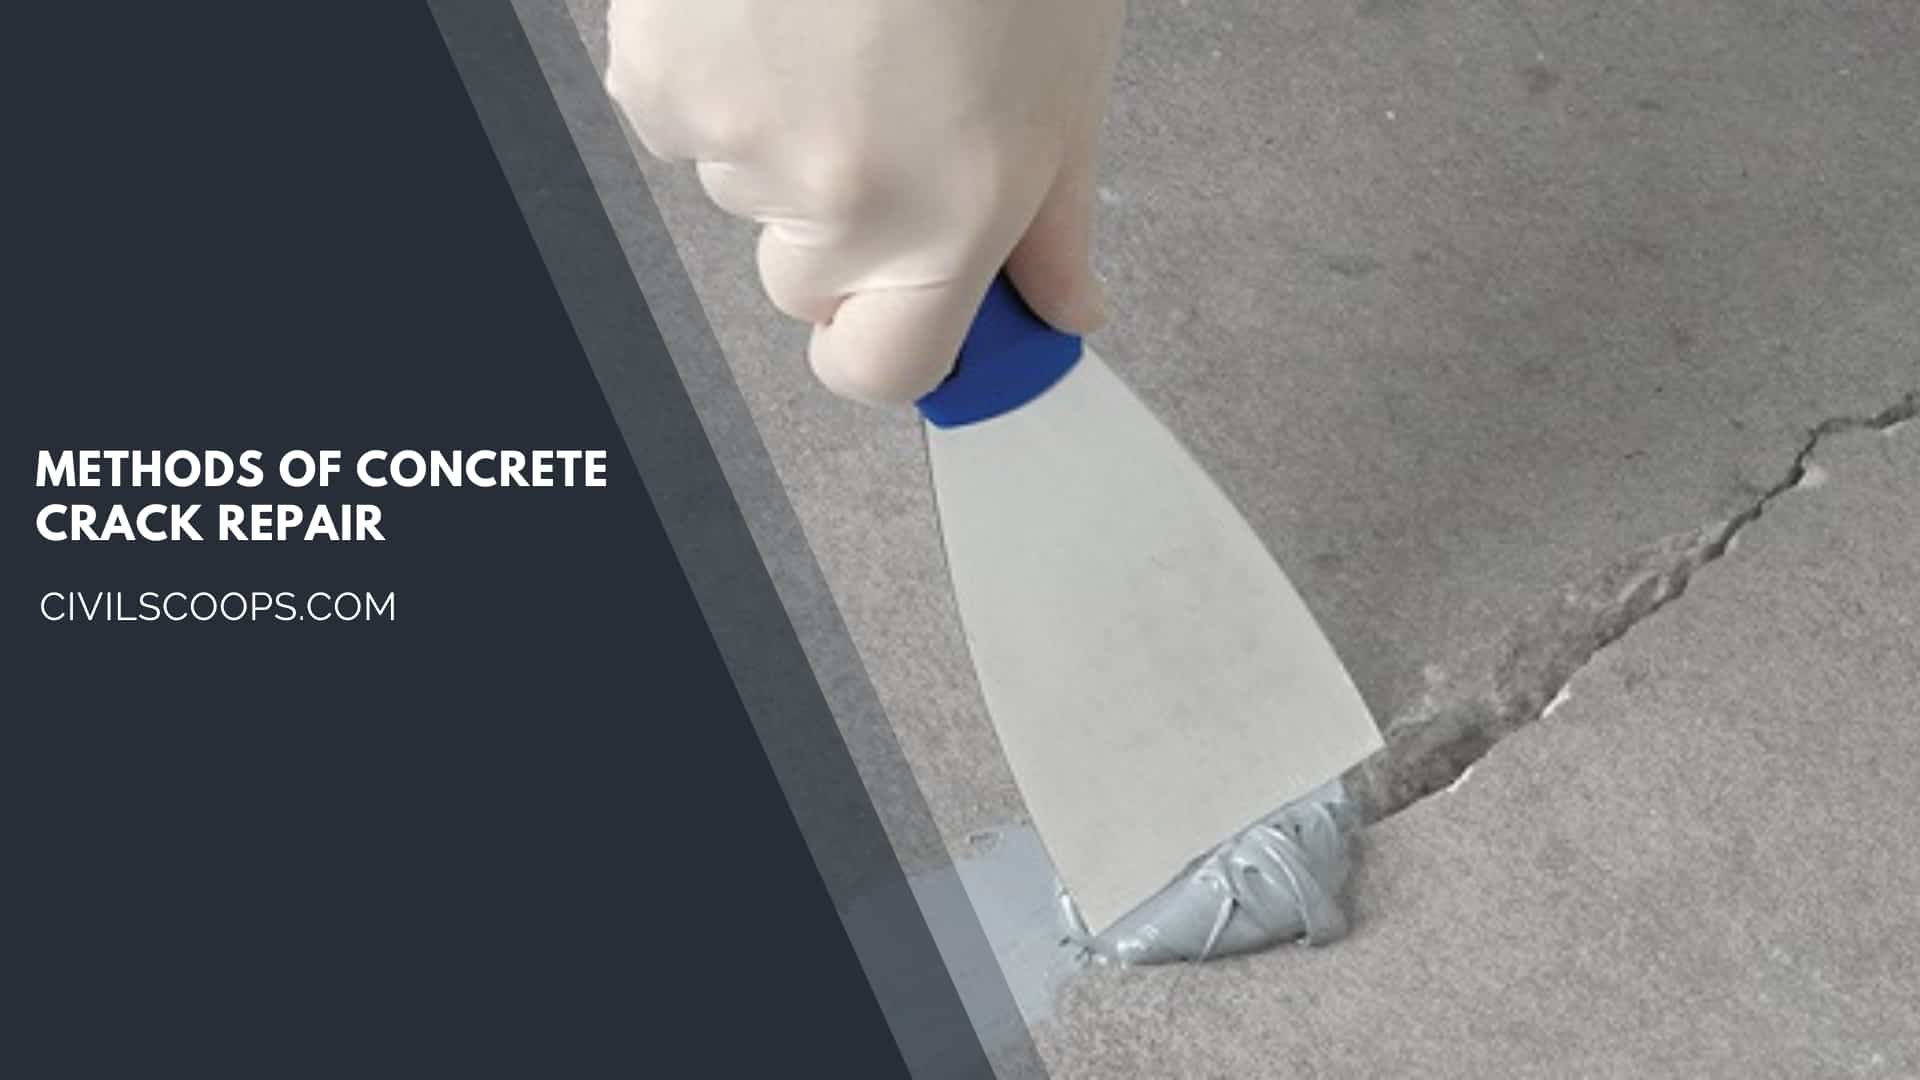 Methods of Concrete Crack Repair